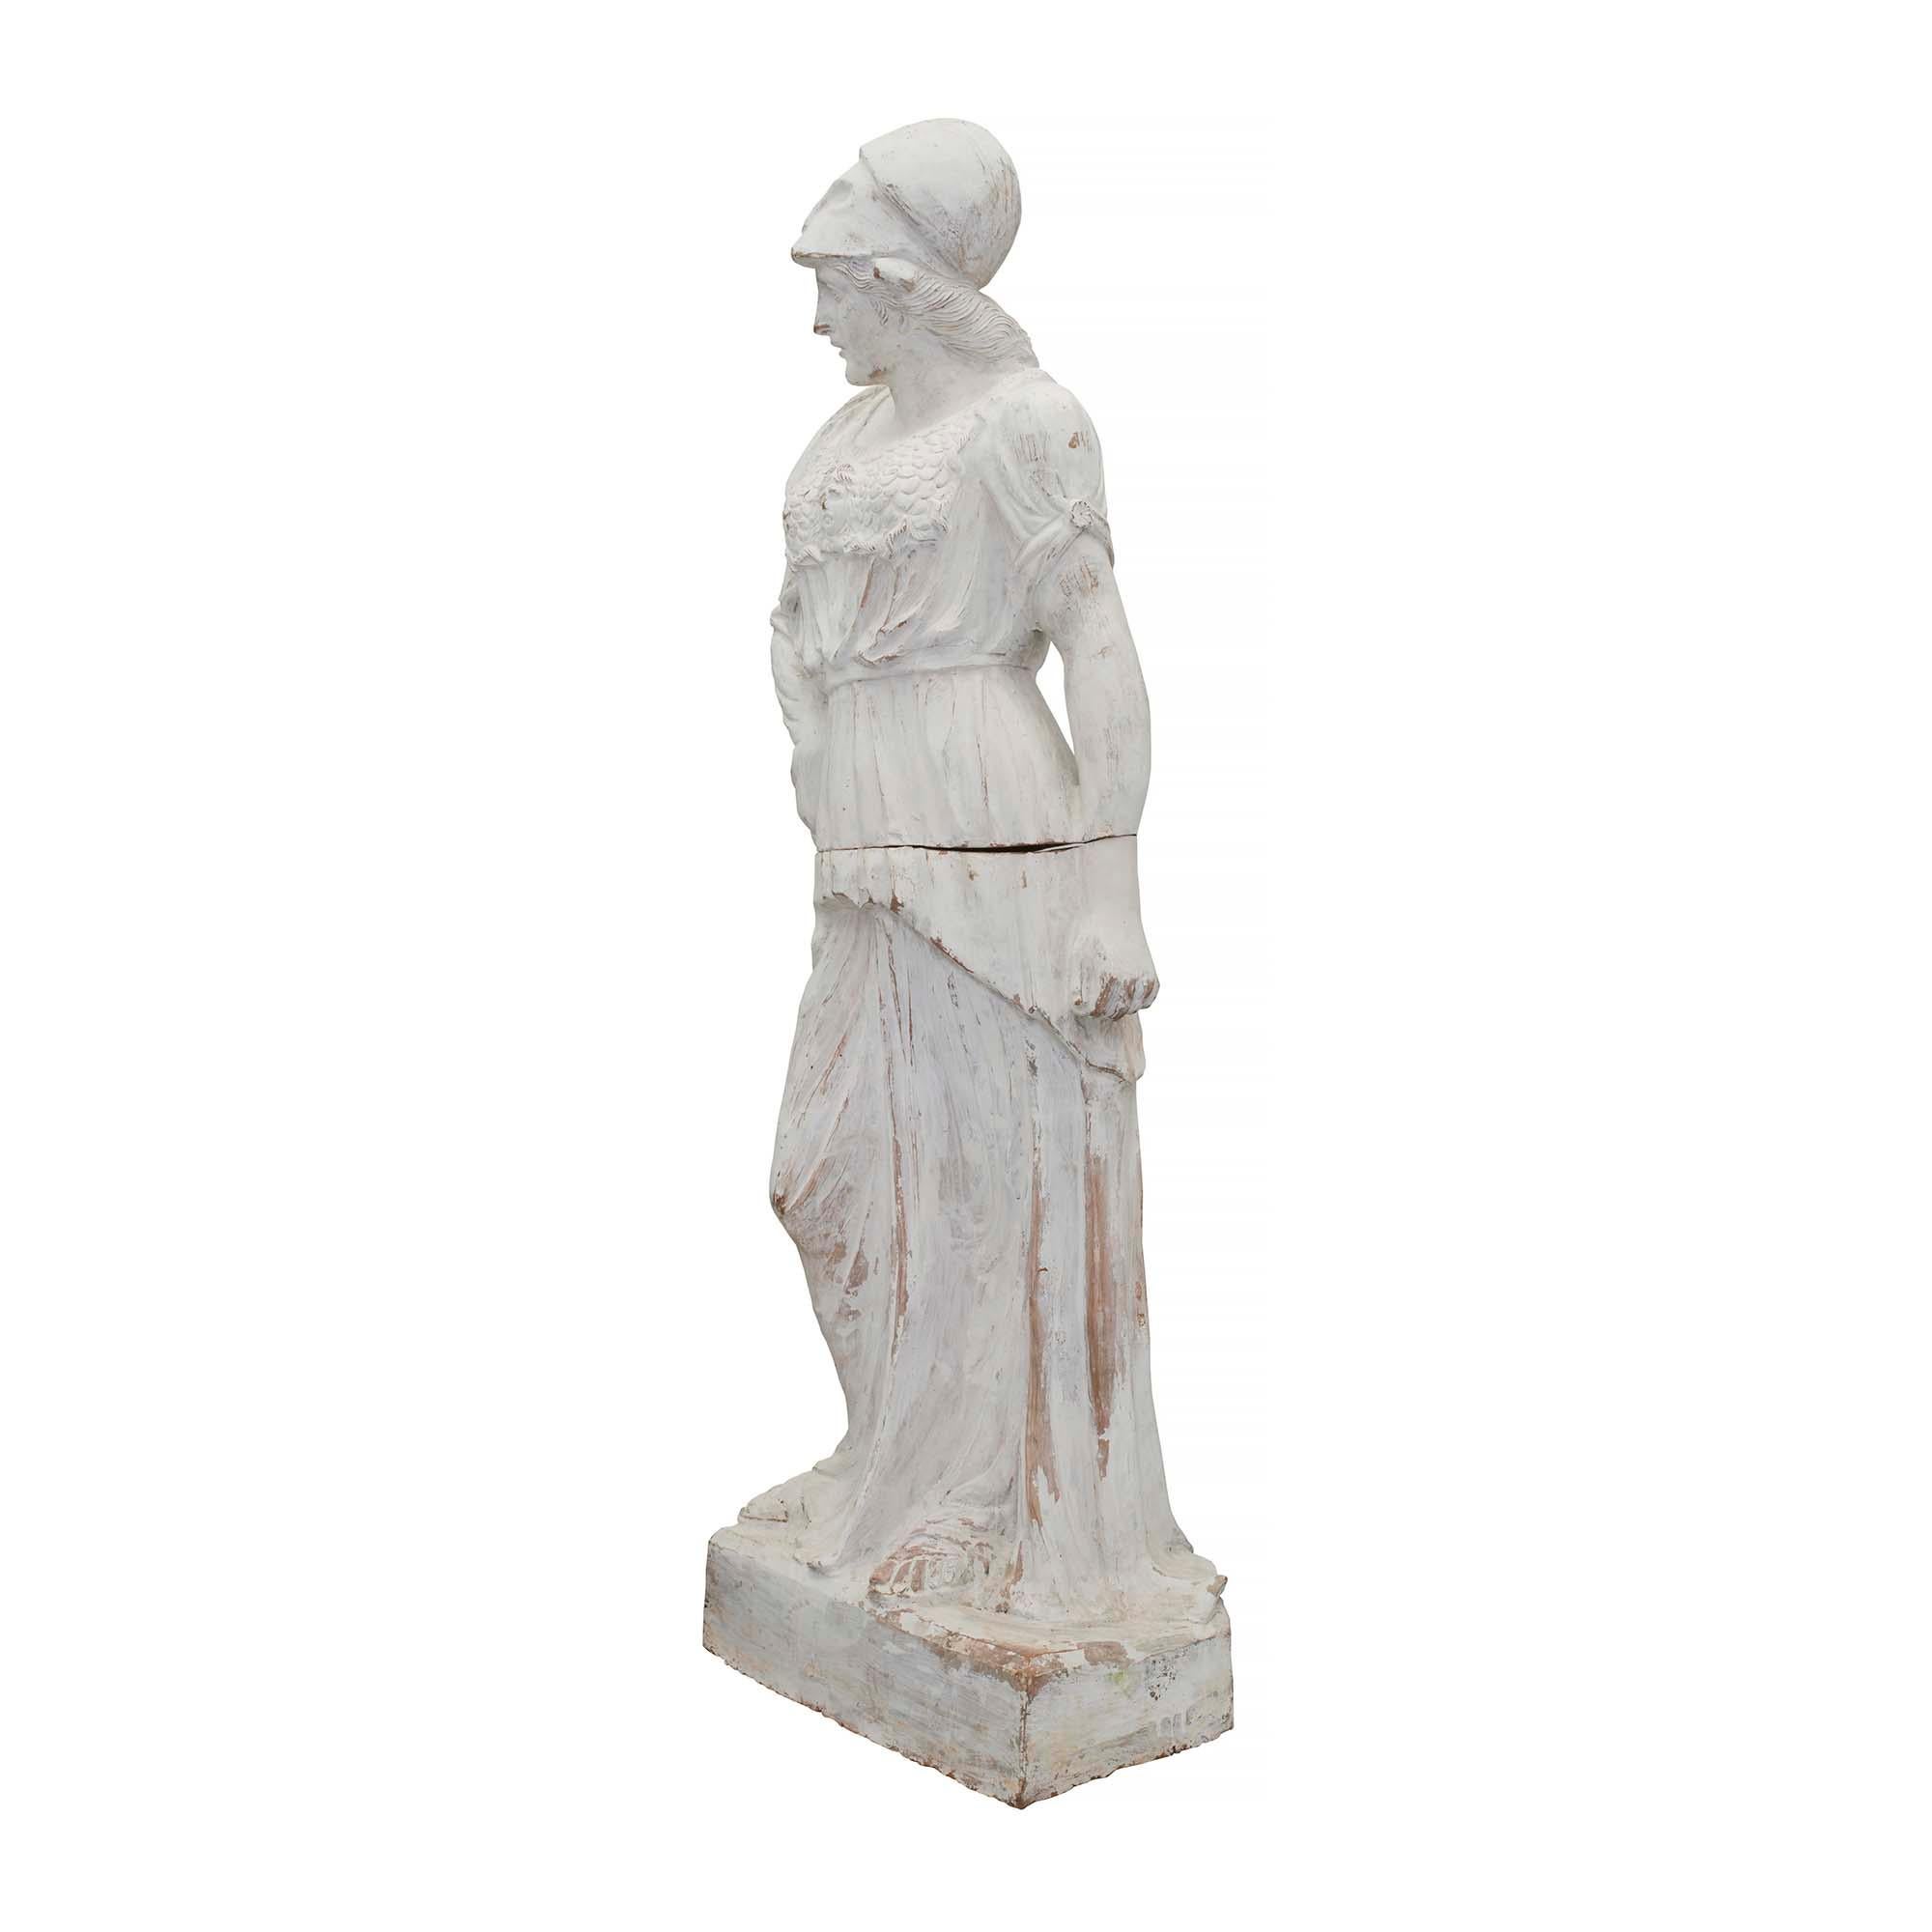 Belle statue de jeune fille en terre cuite patinée du XIXe siècle. La statue en deux parties est surélevée par une base rectangulaire où se tient la jeune fille. Elle porte des sandales et est drapée dans des vêtements d'époque. À travers sa tenue,